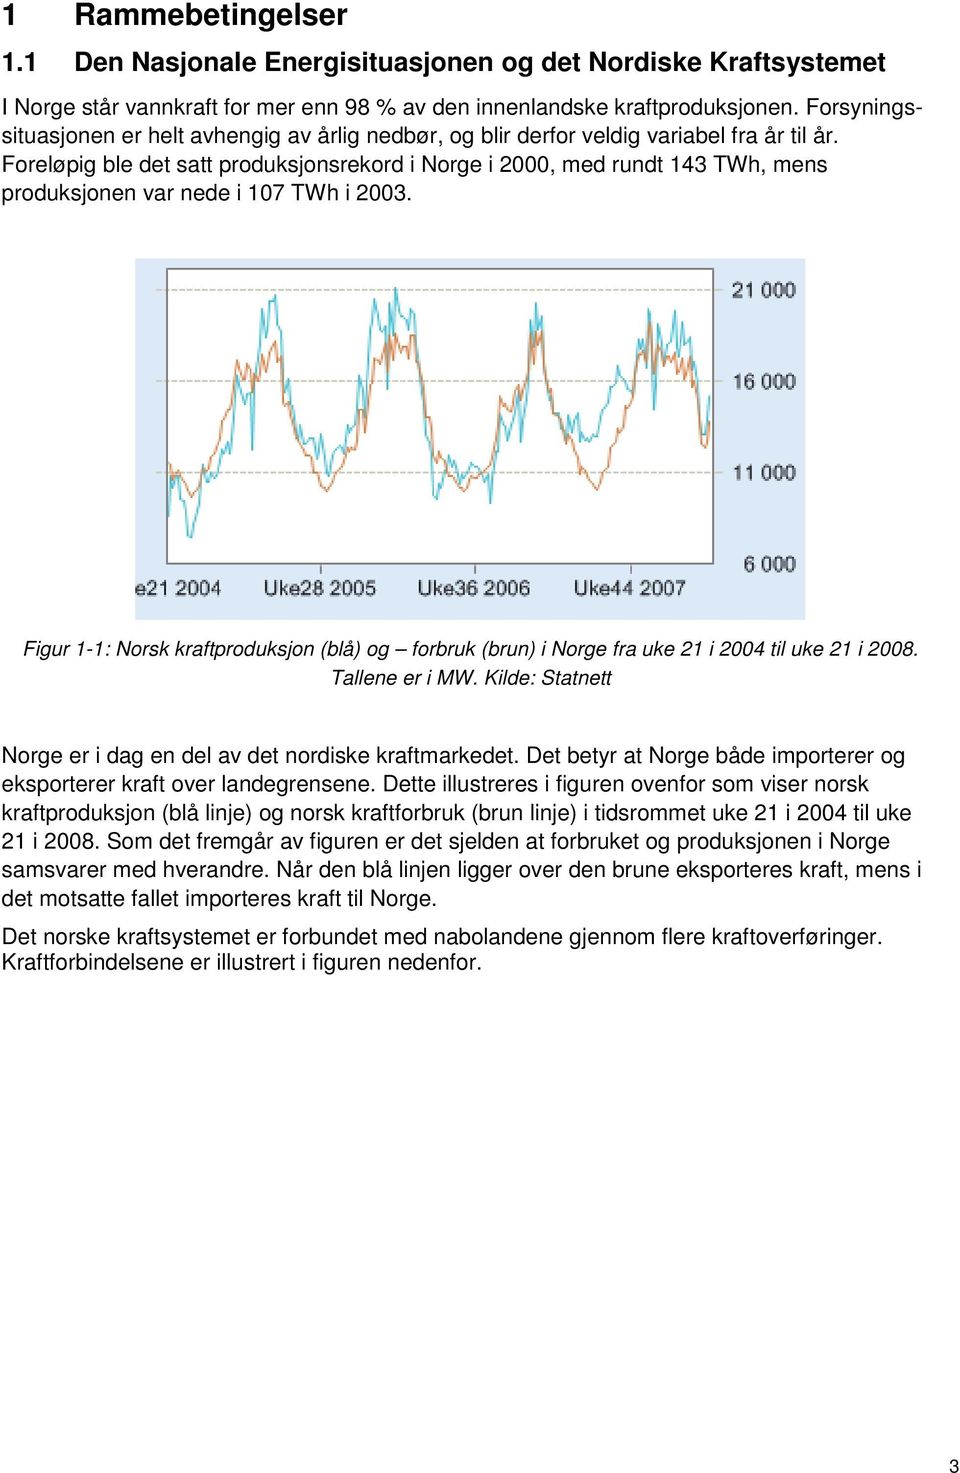 Foreløpig ble det satt produksjonsrekord i Norge i 2000, med rundt 143 TWh, mens produksjonen var nede i 107 TWh i 2003.